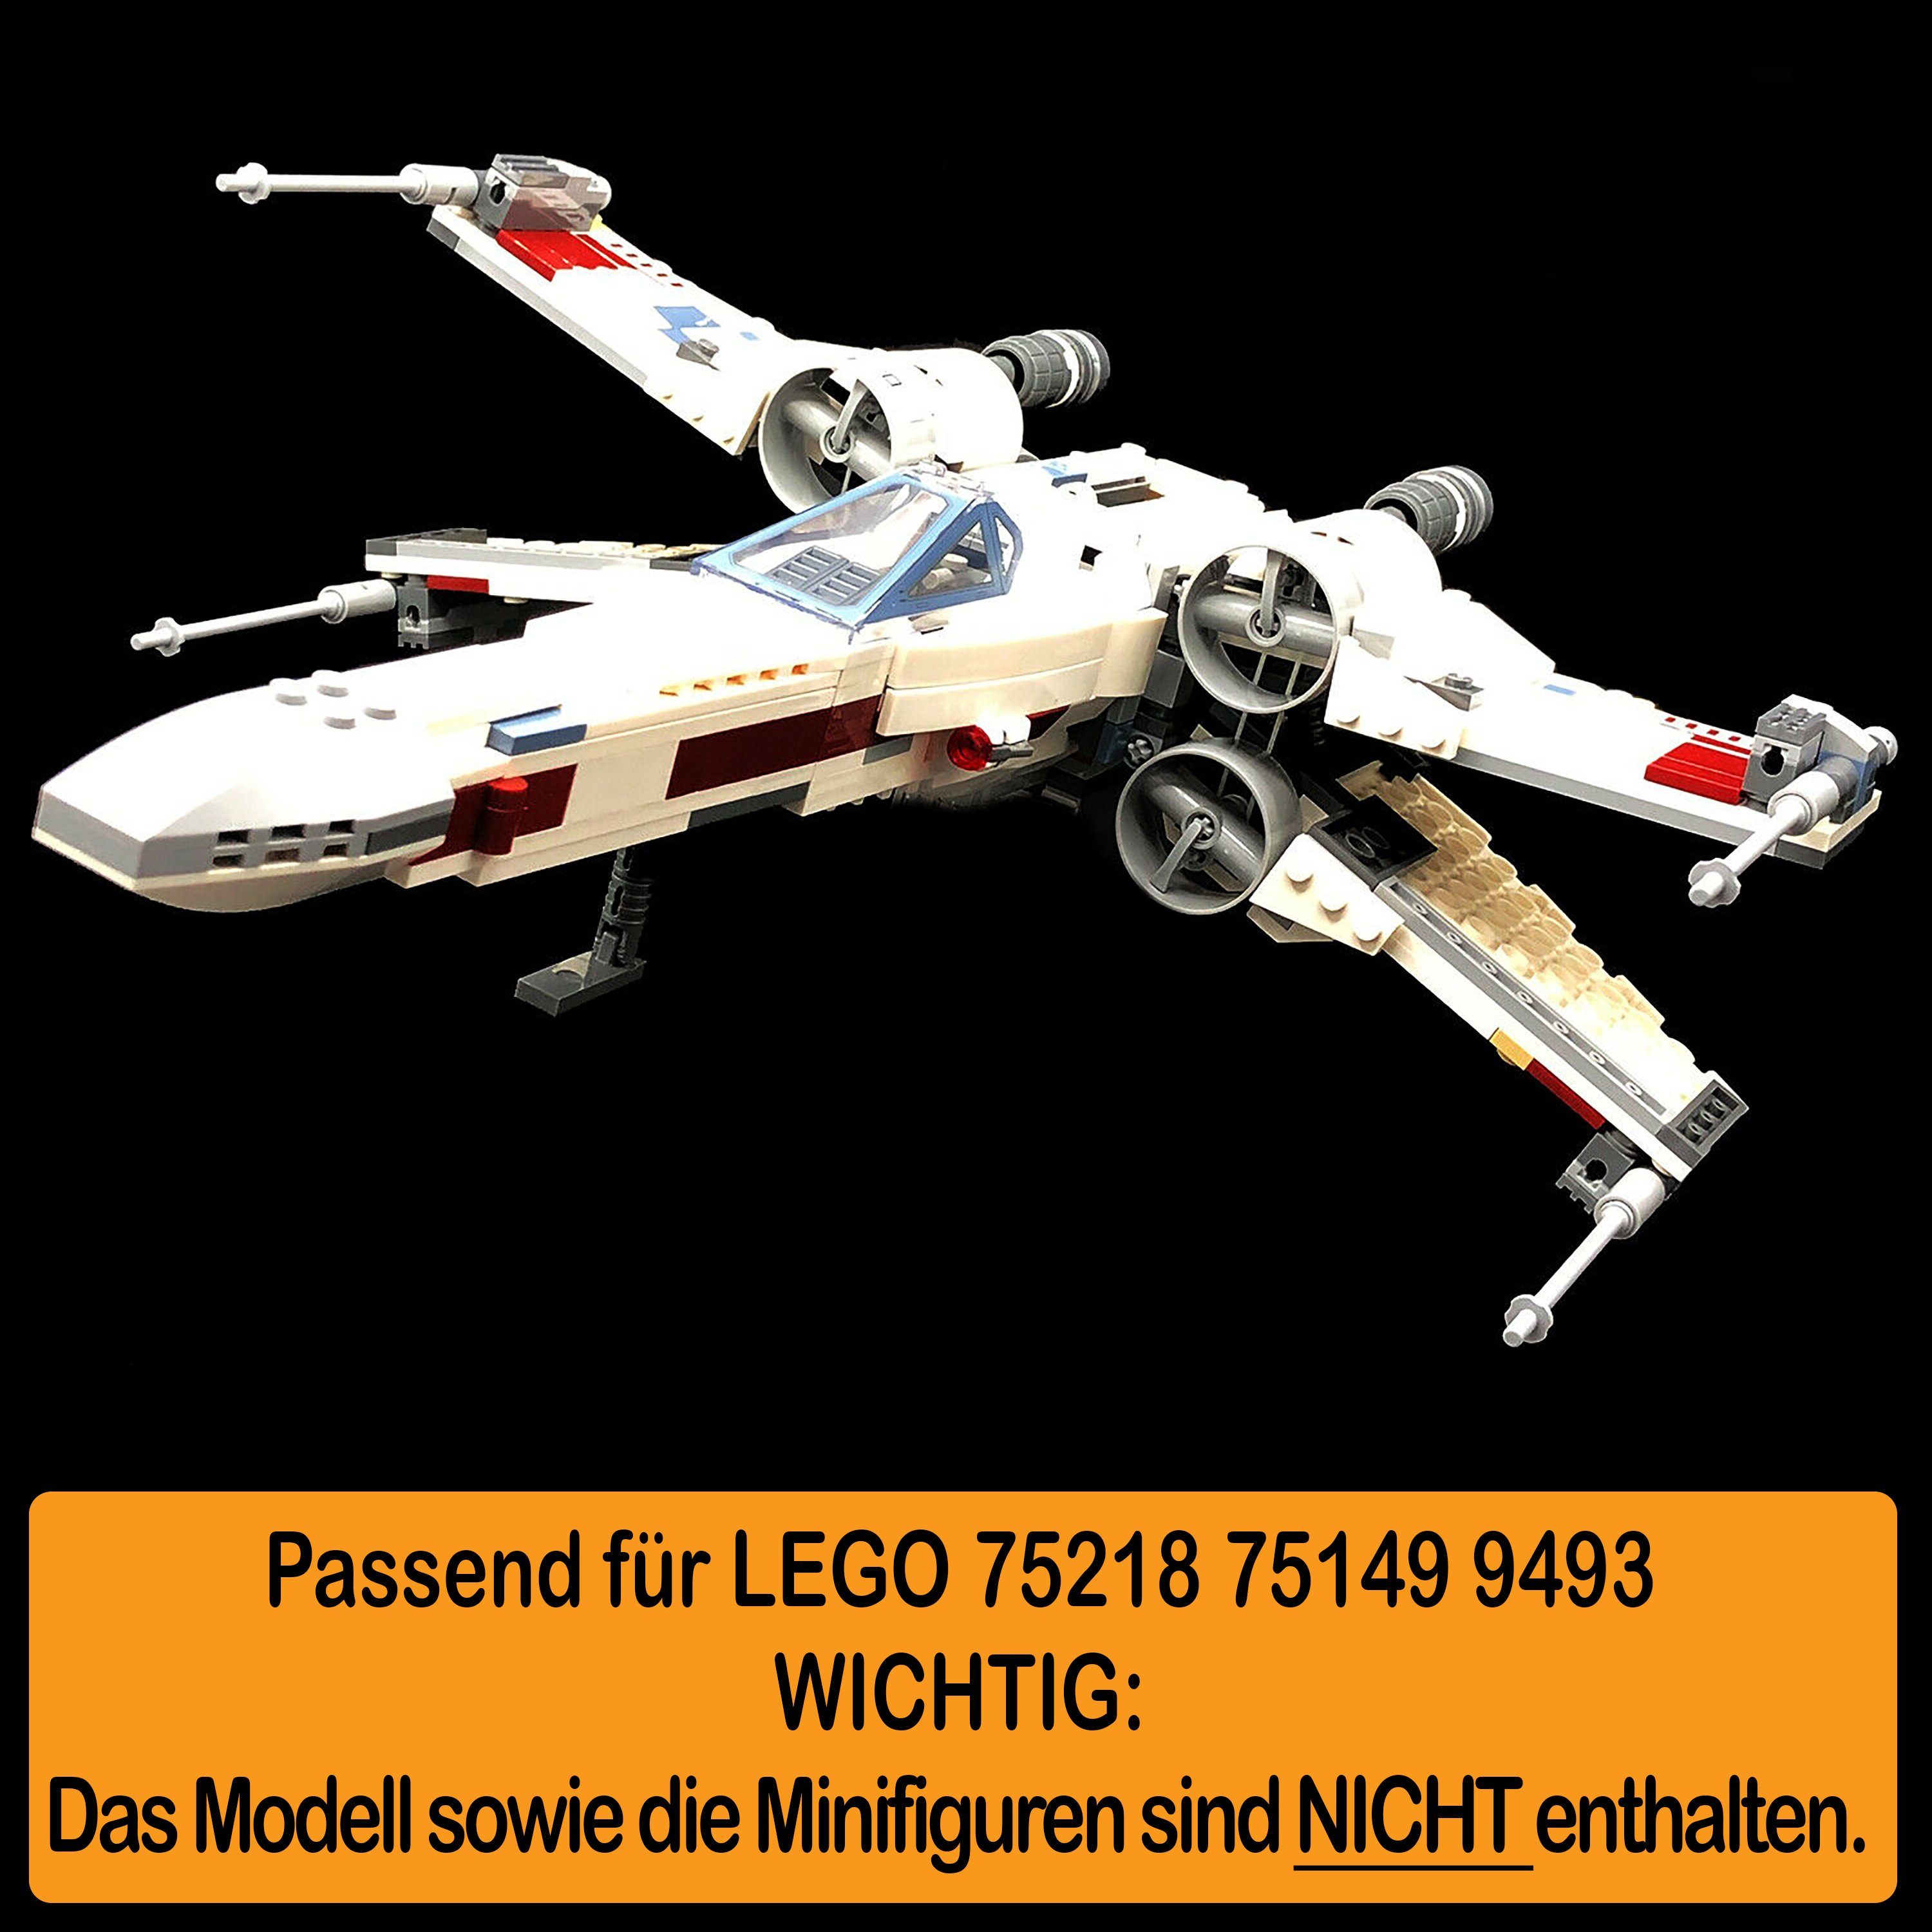 AREA17 Standfuß Acryl Display Stand Positionen X-Wing einstellbar Winkel und Verschiedene Starfighter, für LEGO 75218